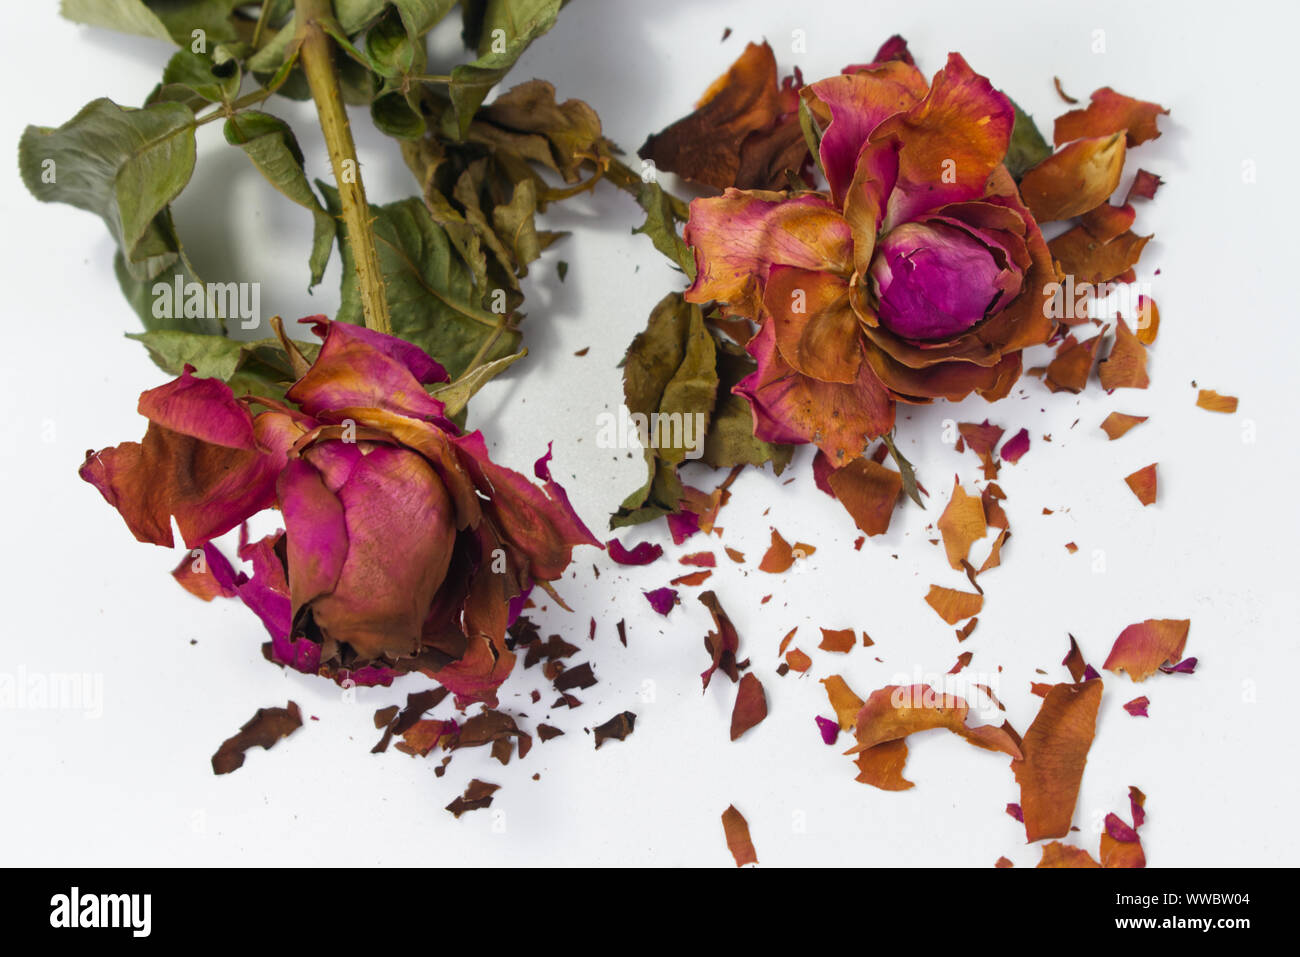 Essiccato rose rosse con fratture di petali di rosa su sfondo bianco. Concetto di invecchiamento amore, romanticismo amaro. Foto Stock